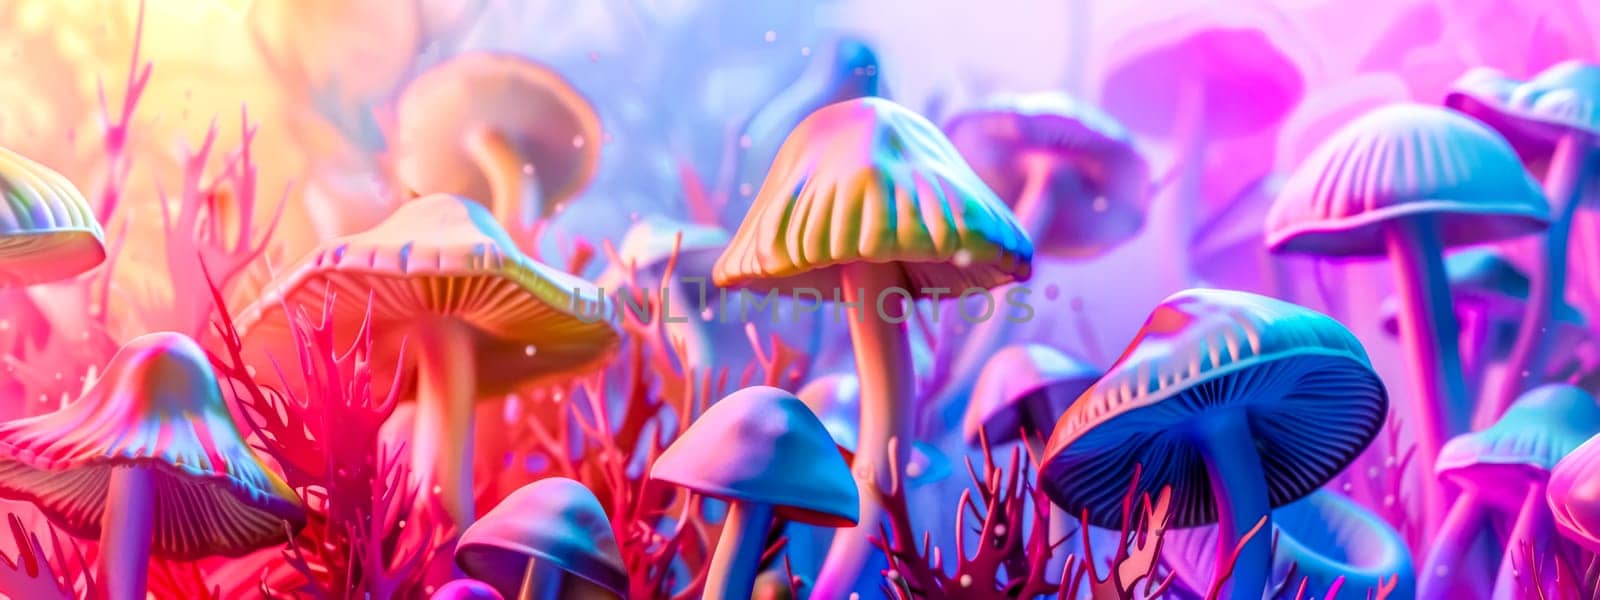 Enchanted forest fungi: vibrant mushroom wonderland by Edophoto